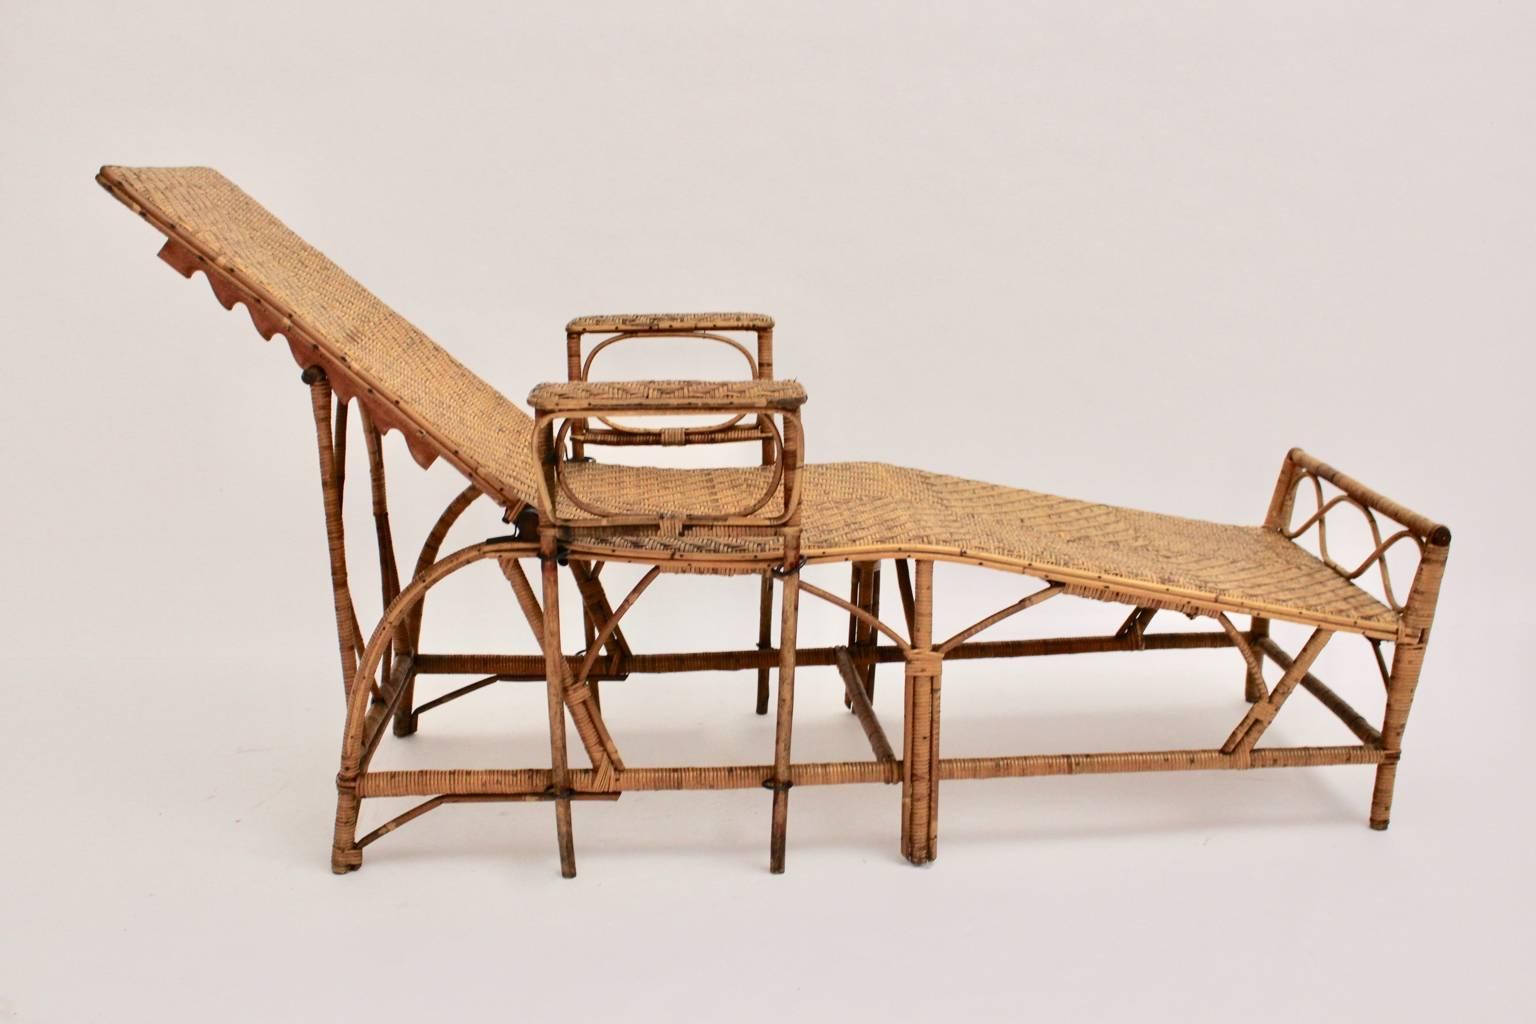 Rattan Art Deco vintage chaise longue oder daybed, die von Perret & Vibert erstellt wurde zugeschrieben, Frankreich, 1920er Jahre.

Diese seltene und elegante Chaiselongue verfügt über eine verstellbare Rückenlehne (von 152 cm bis 192 cm) und eine